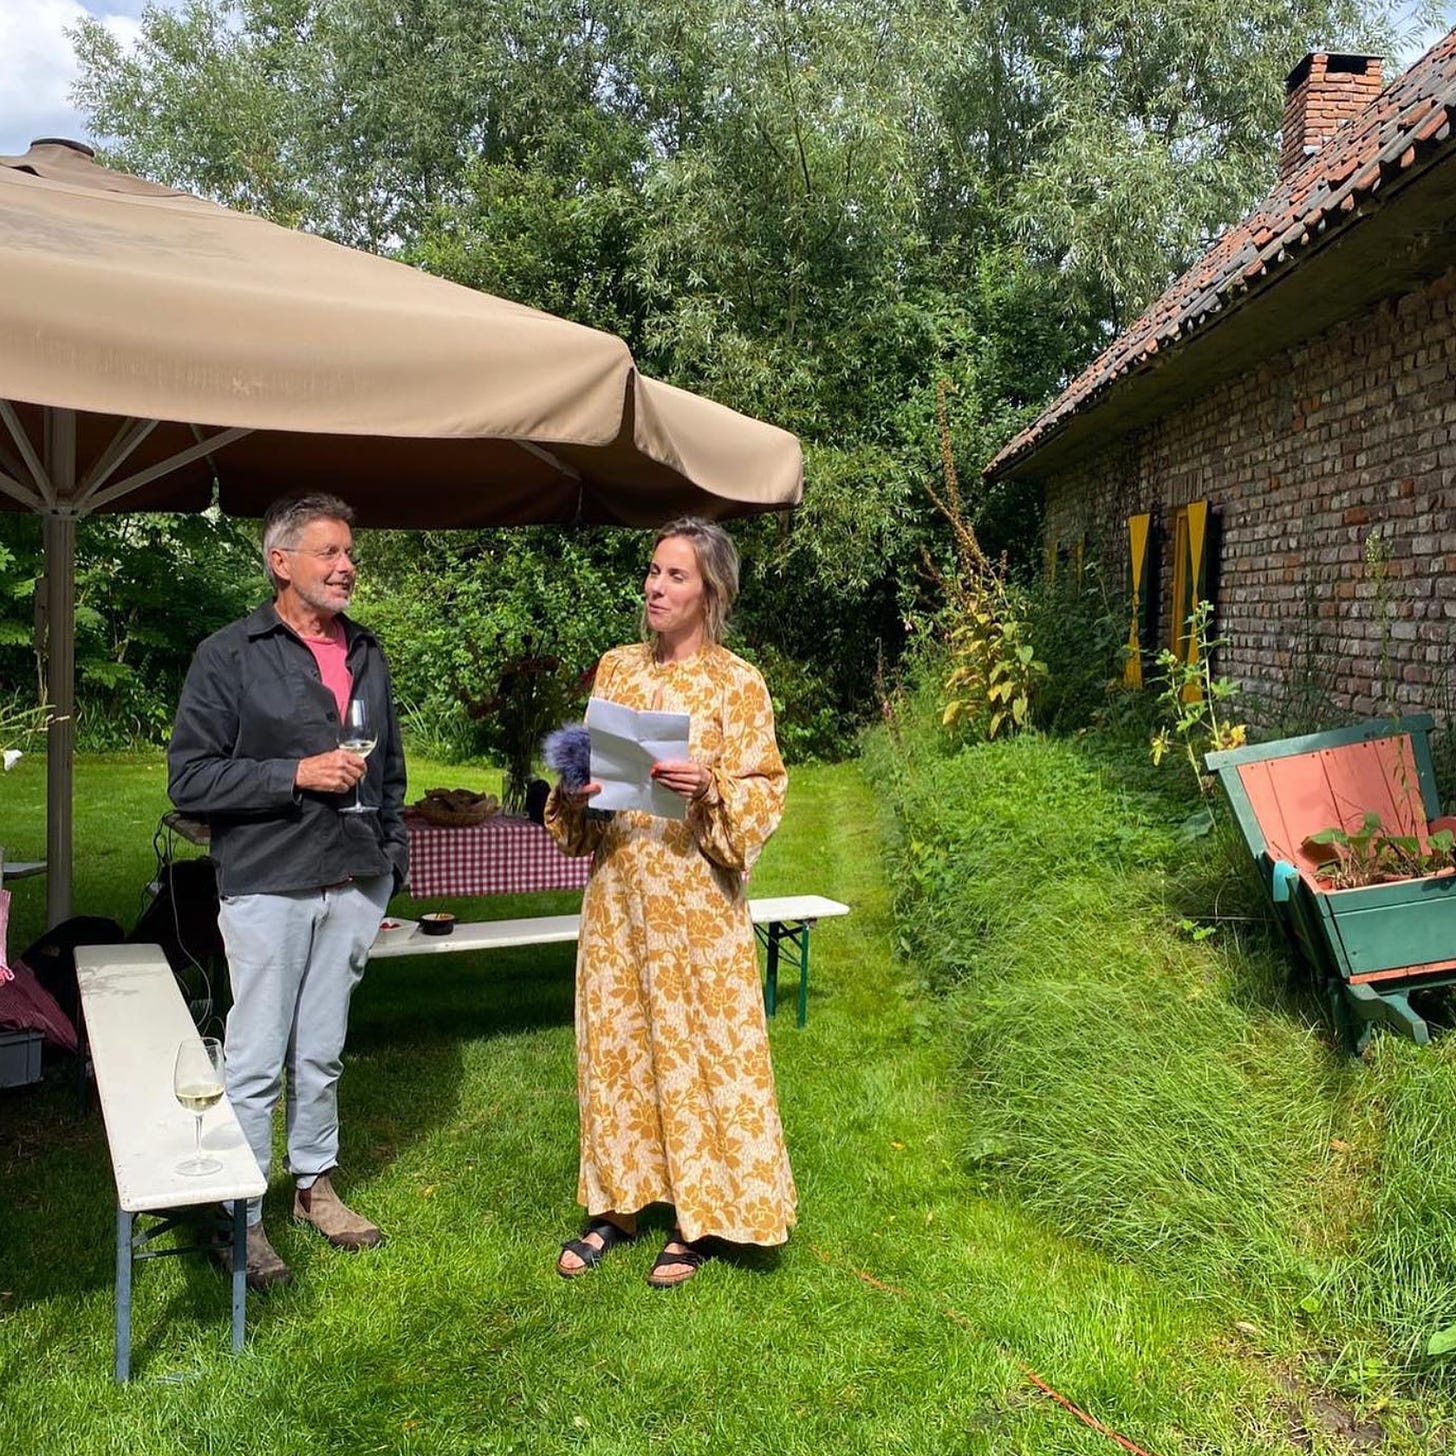 foto van Eva en haar vader die buiten in de zon in een tuin staa. Hij draagt een lichte broek en een donker vest en heeft een glas wijn vast. Zij heeft een gele bloemetjesjurk aan, een blaadje en een microfoon vast.